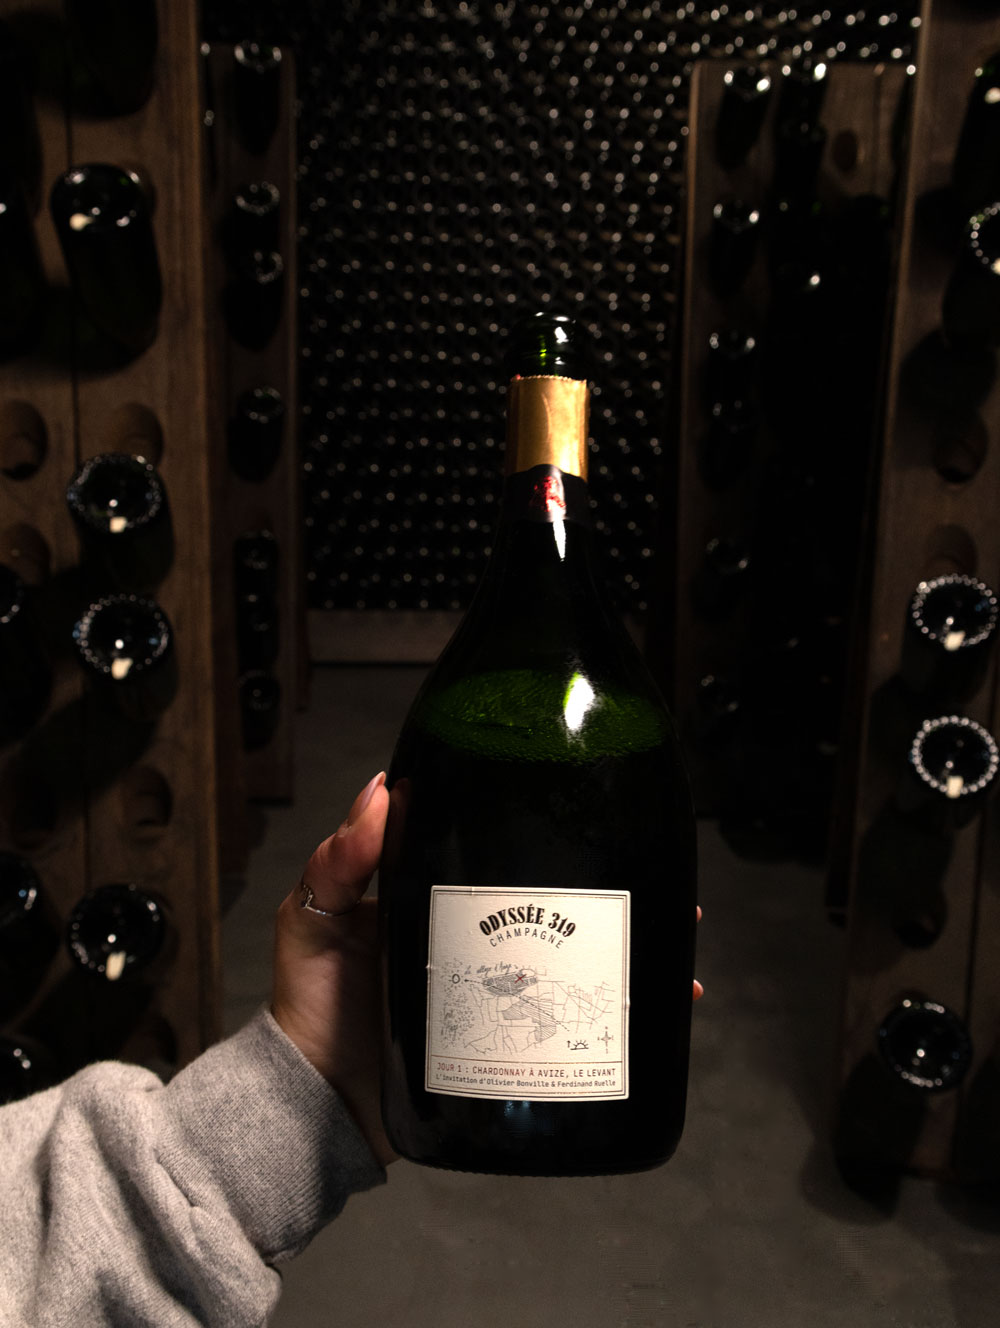 Champagne Odyssée 319 Blanc de Blancs Jour 1: Le Levant Grand Cru Brut 2014